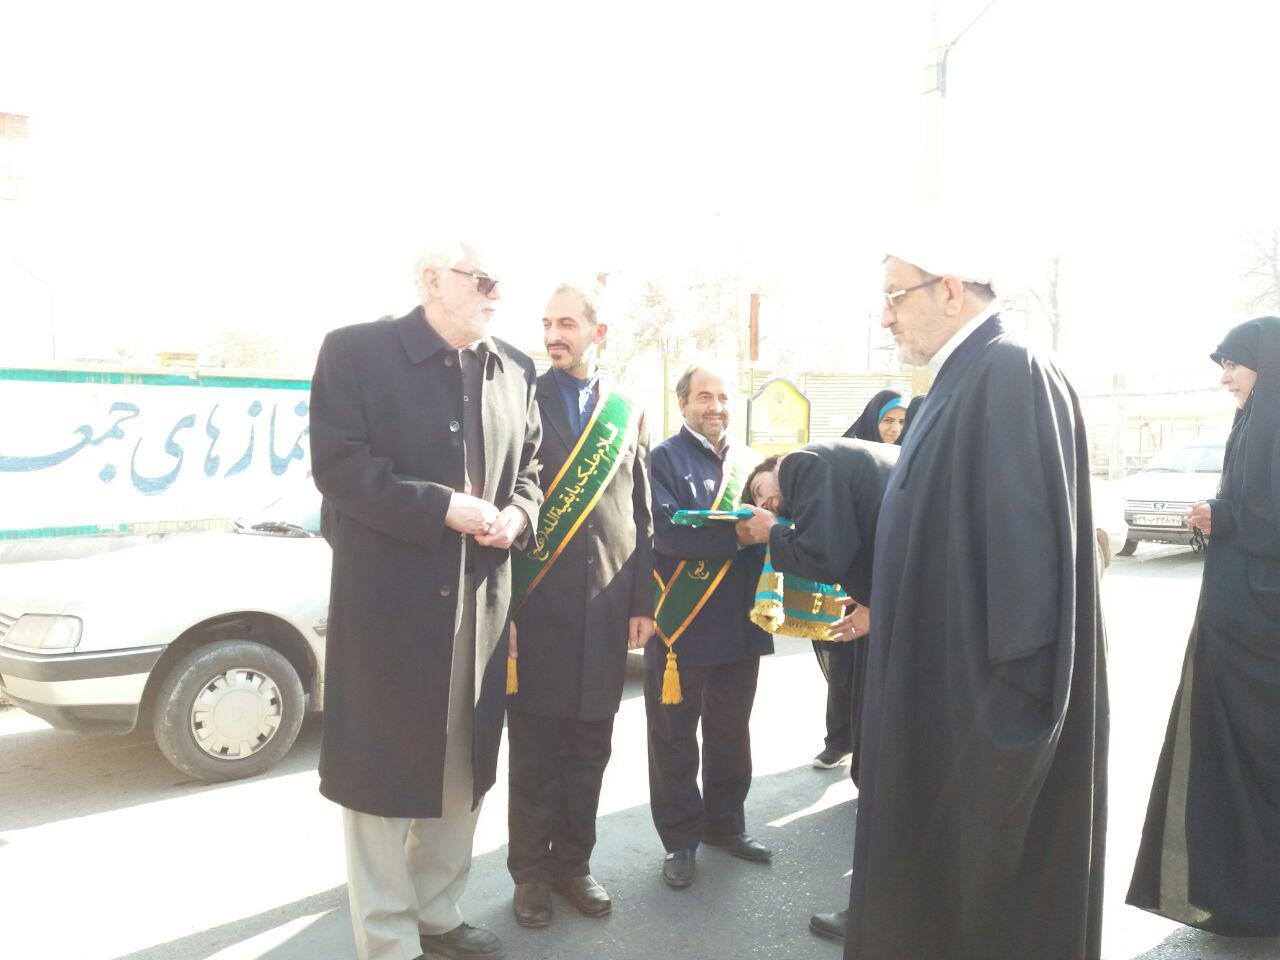 استقبال مردم شهرستان خوي از پرچم متبرک مسجد مقدس جمکران وخادمان آن به روايت تصوير